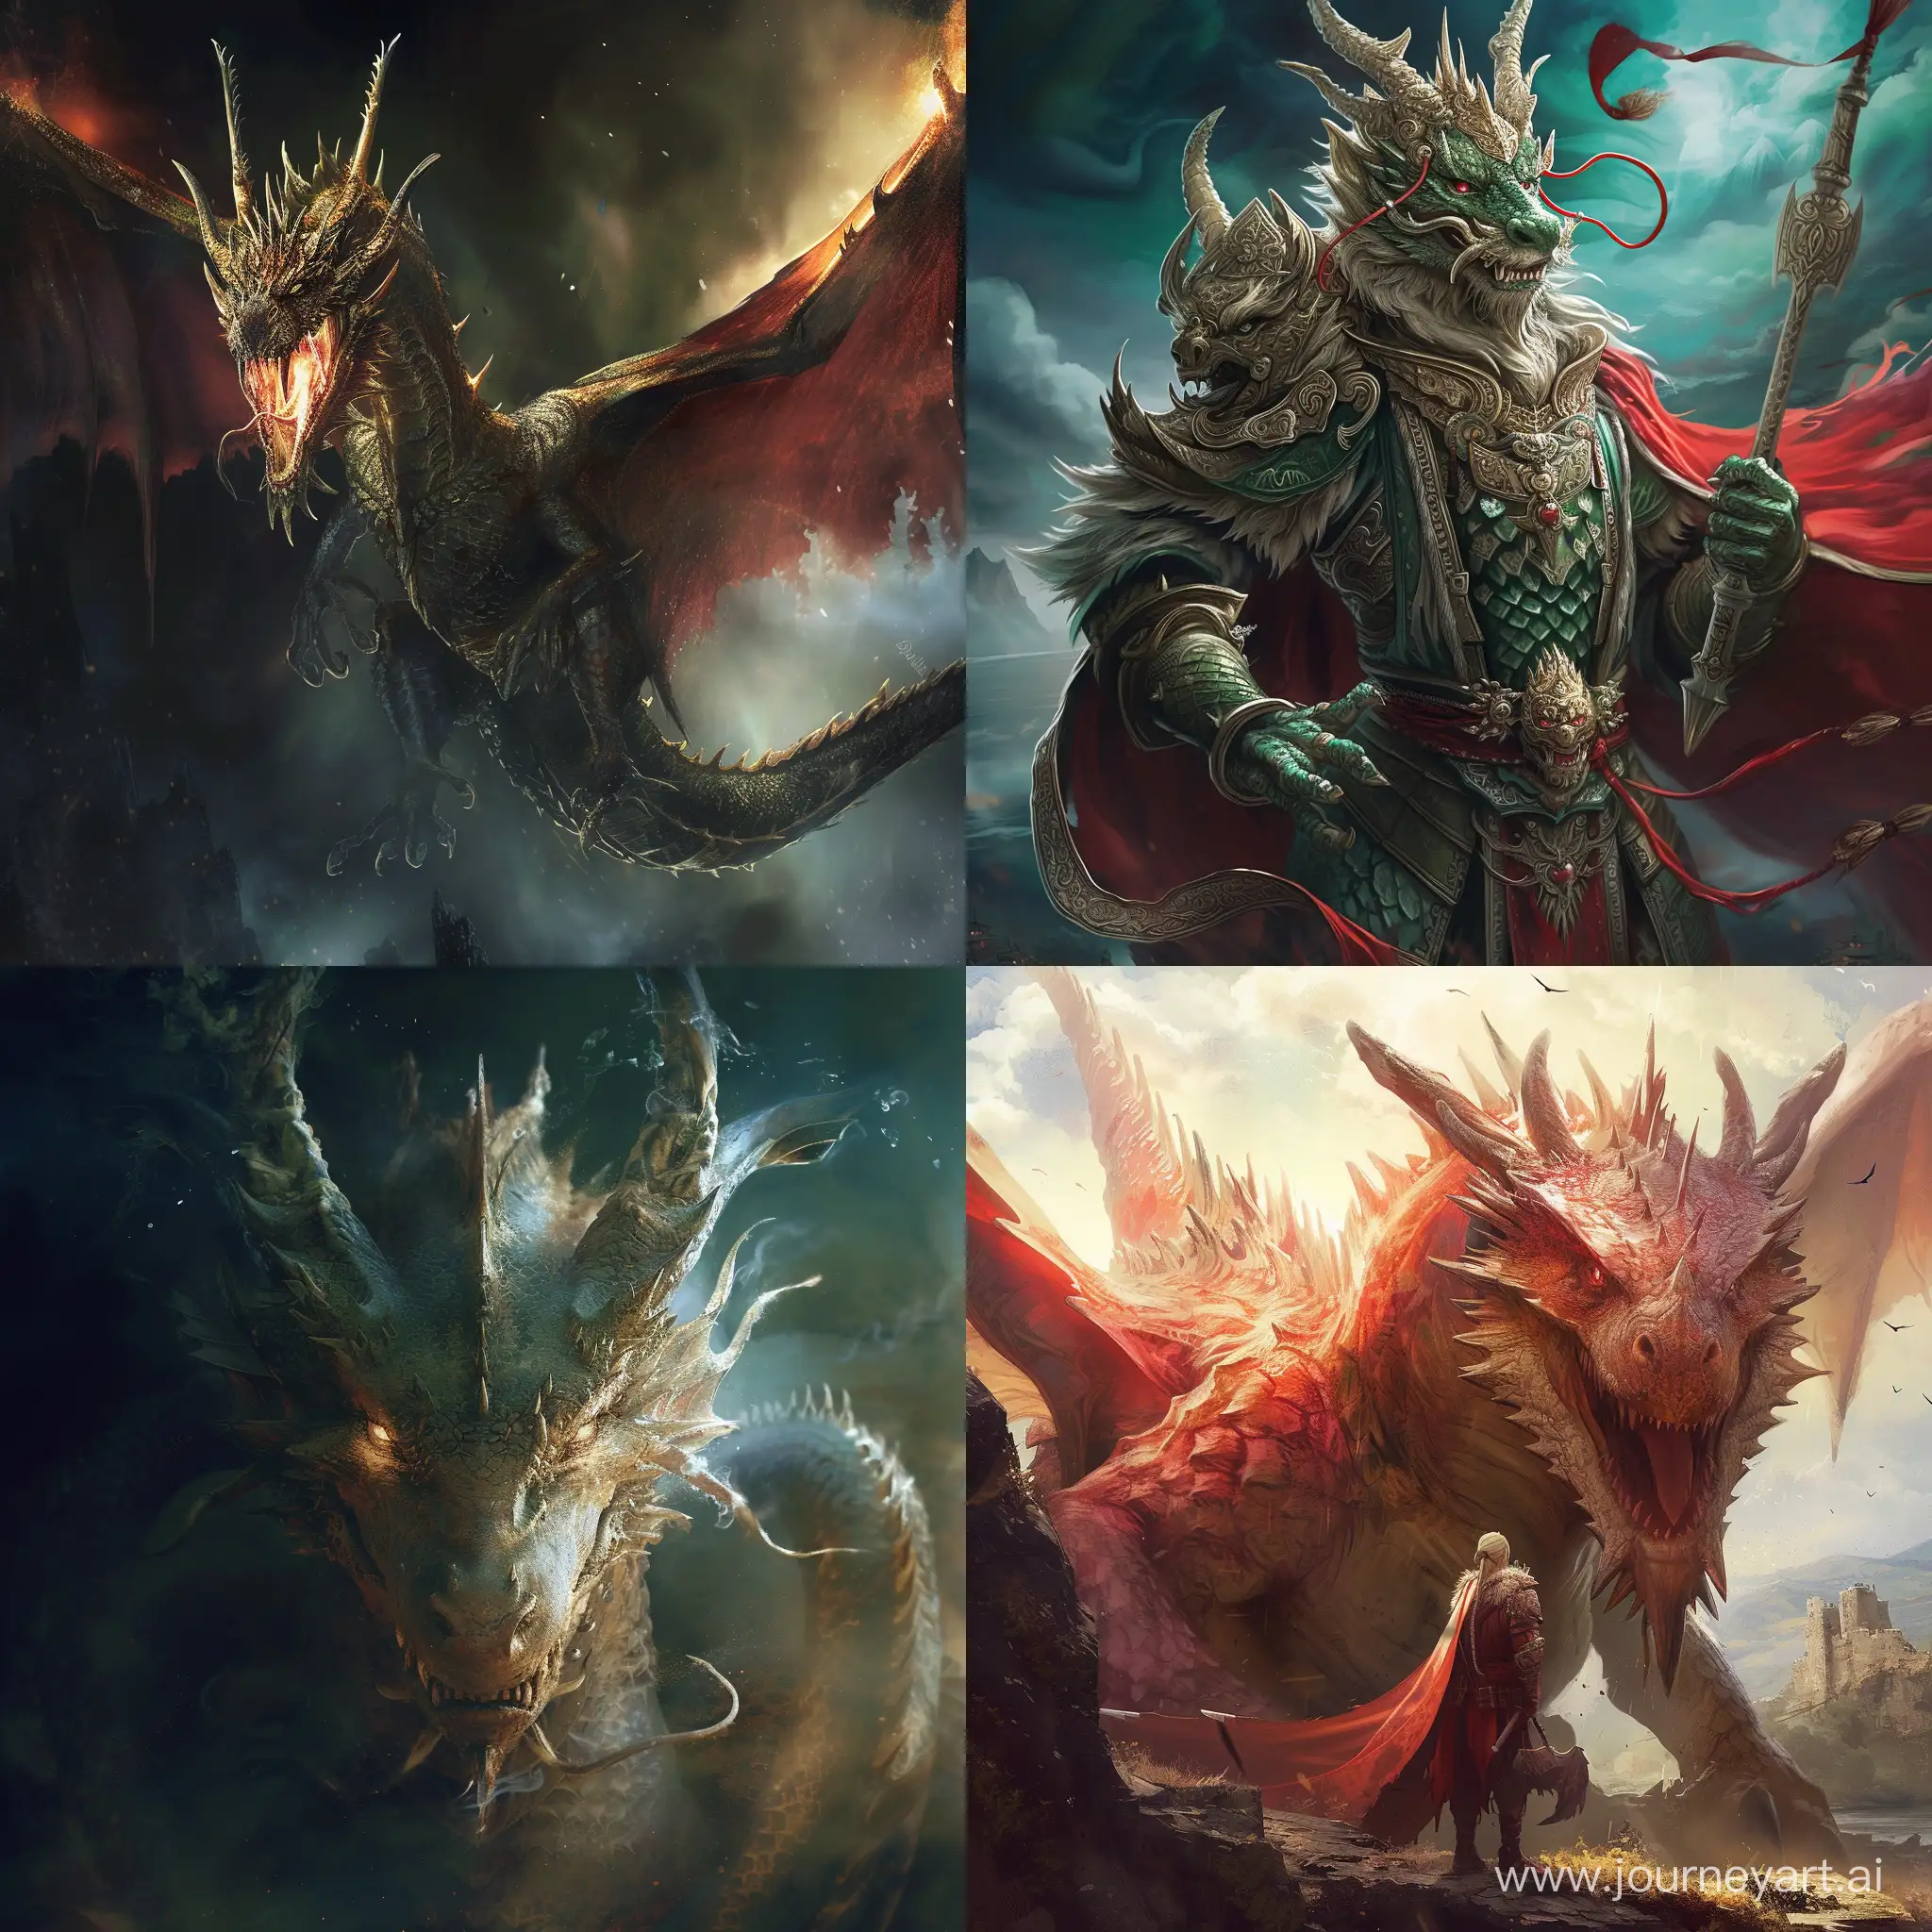 Majestic-Dragon-King-in-a-Vibrant-Fantasy-Realm